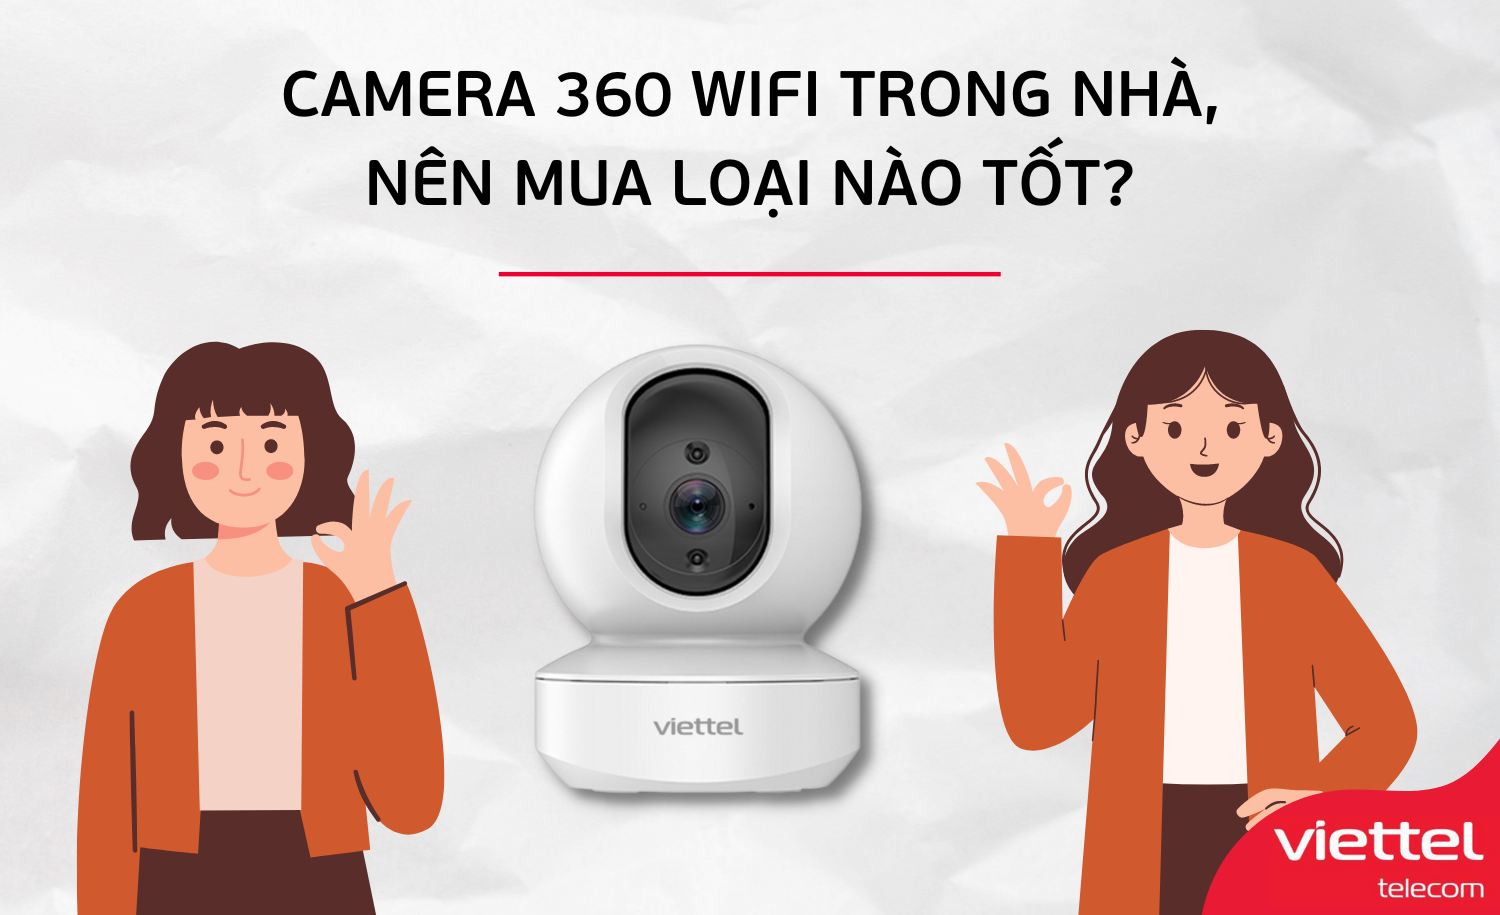 CCamera 360 độ trong nhà nào tốt nhất hiện nay?